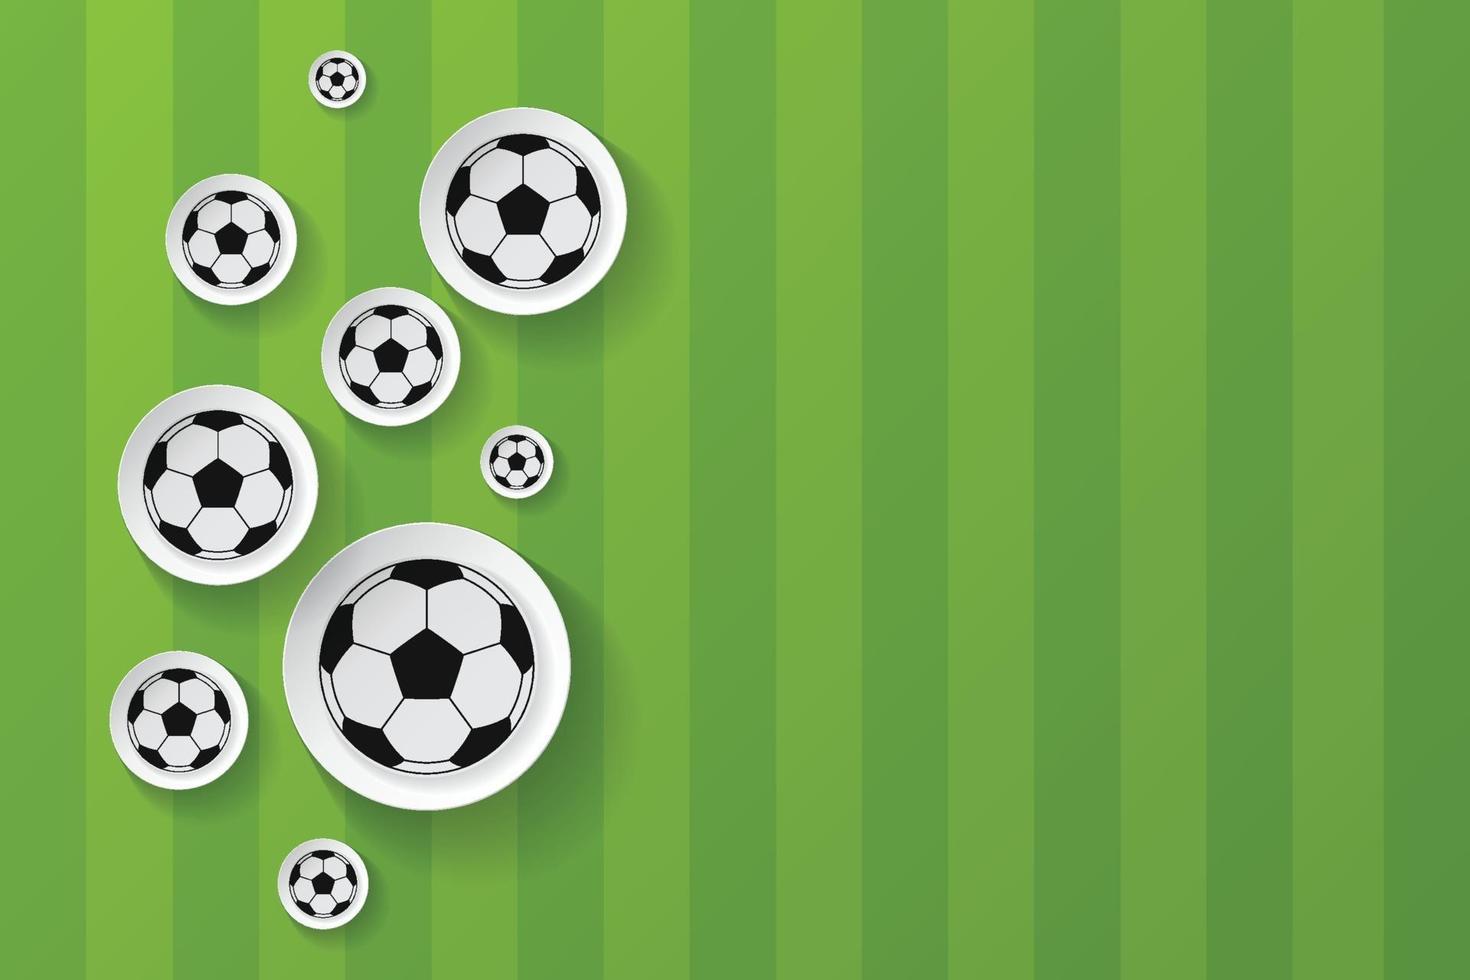 fotboll med bakgrund för fotbollsfältmönster vektor